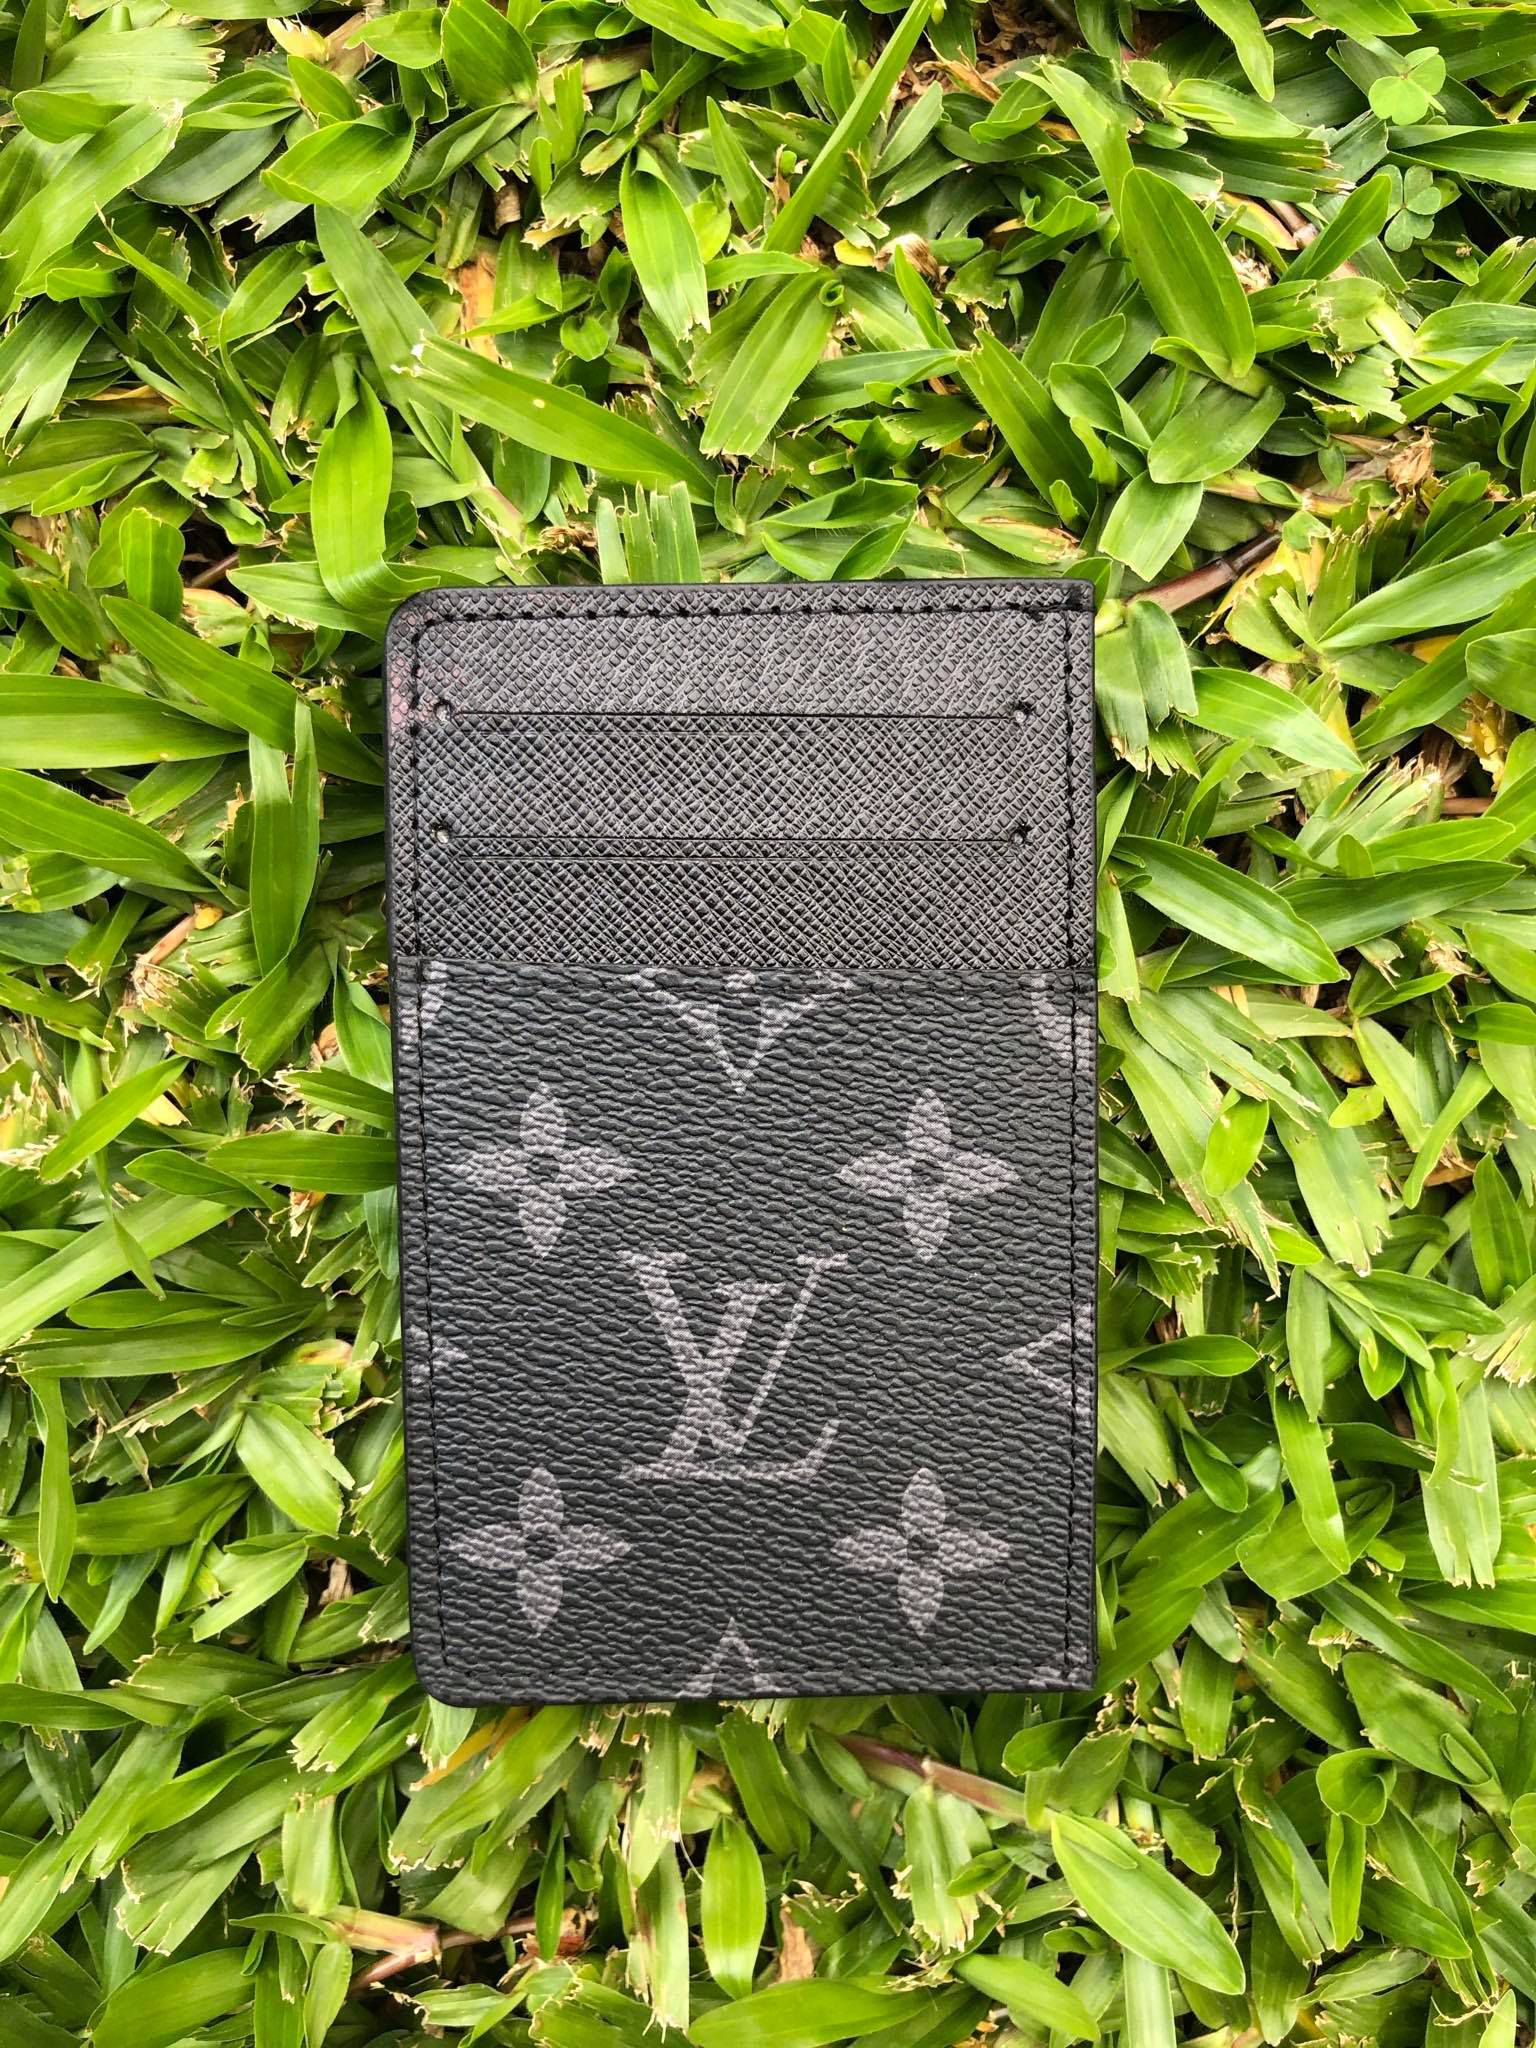 Porta Cartão Louis Vuitton - BRED ACESSÓRIOS